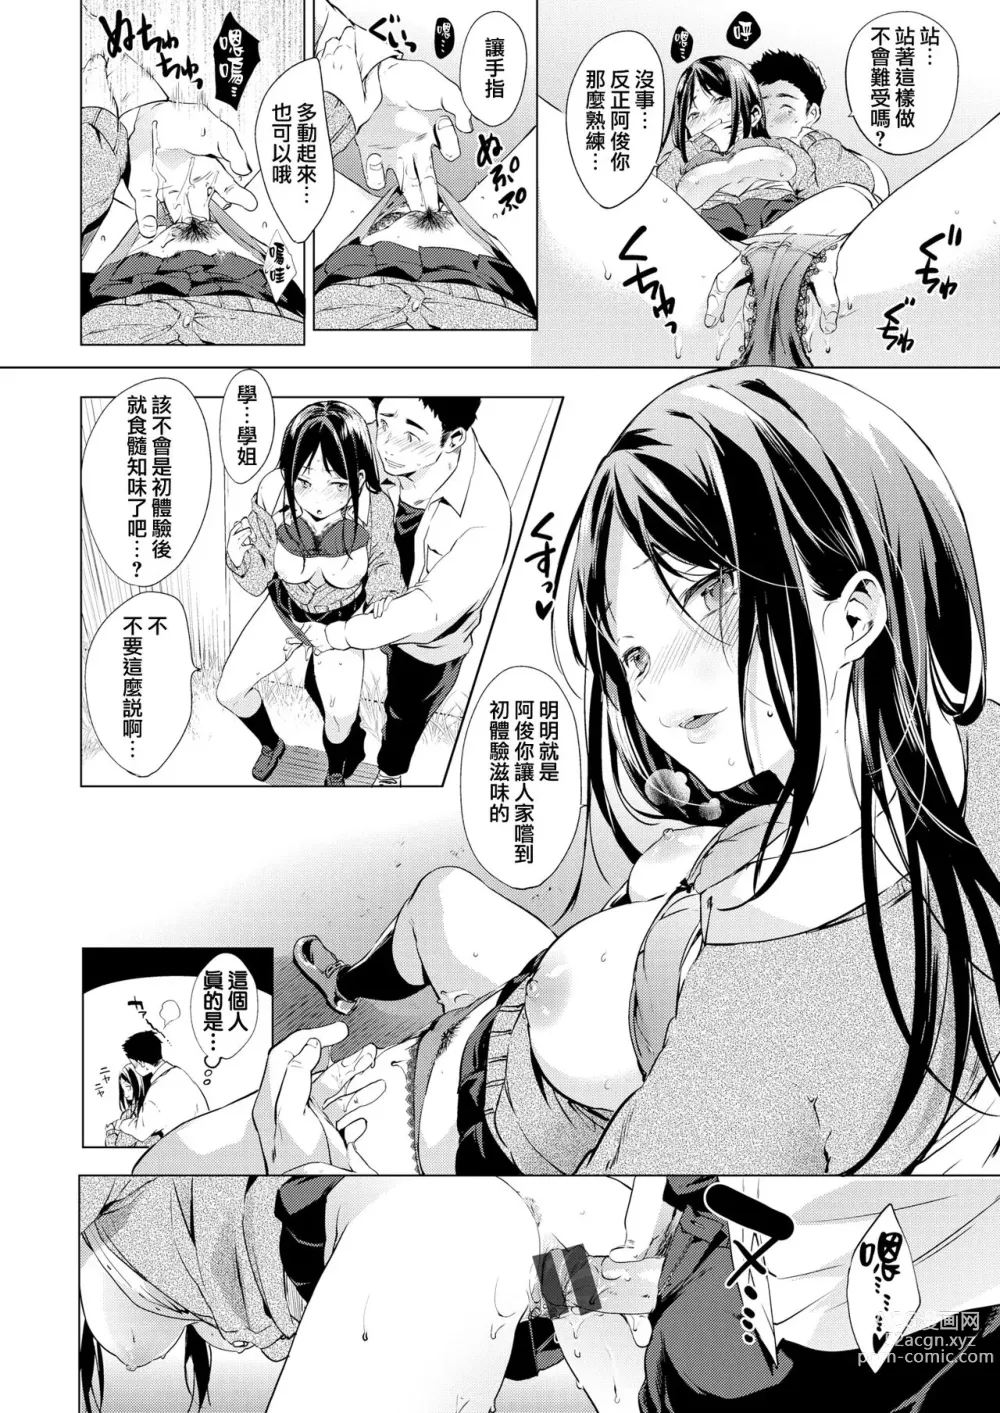 Page 13 of manga Kaikan Switch